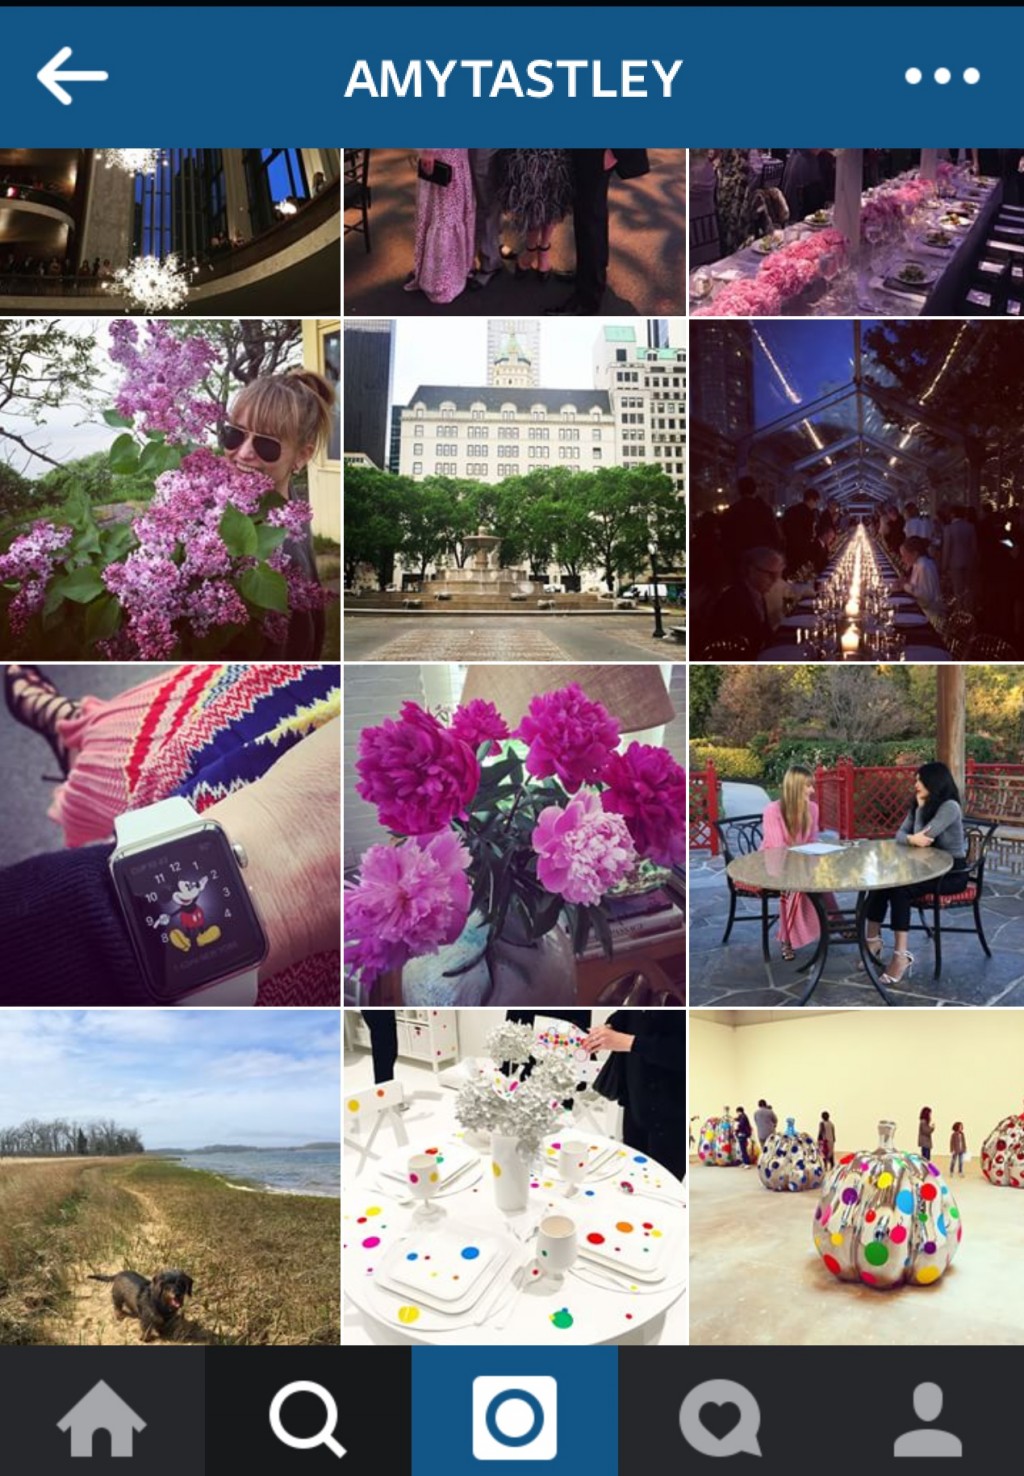 Instagram của Amy Astley có 62.6 ngàn người theo dõi.